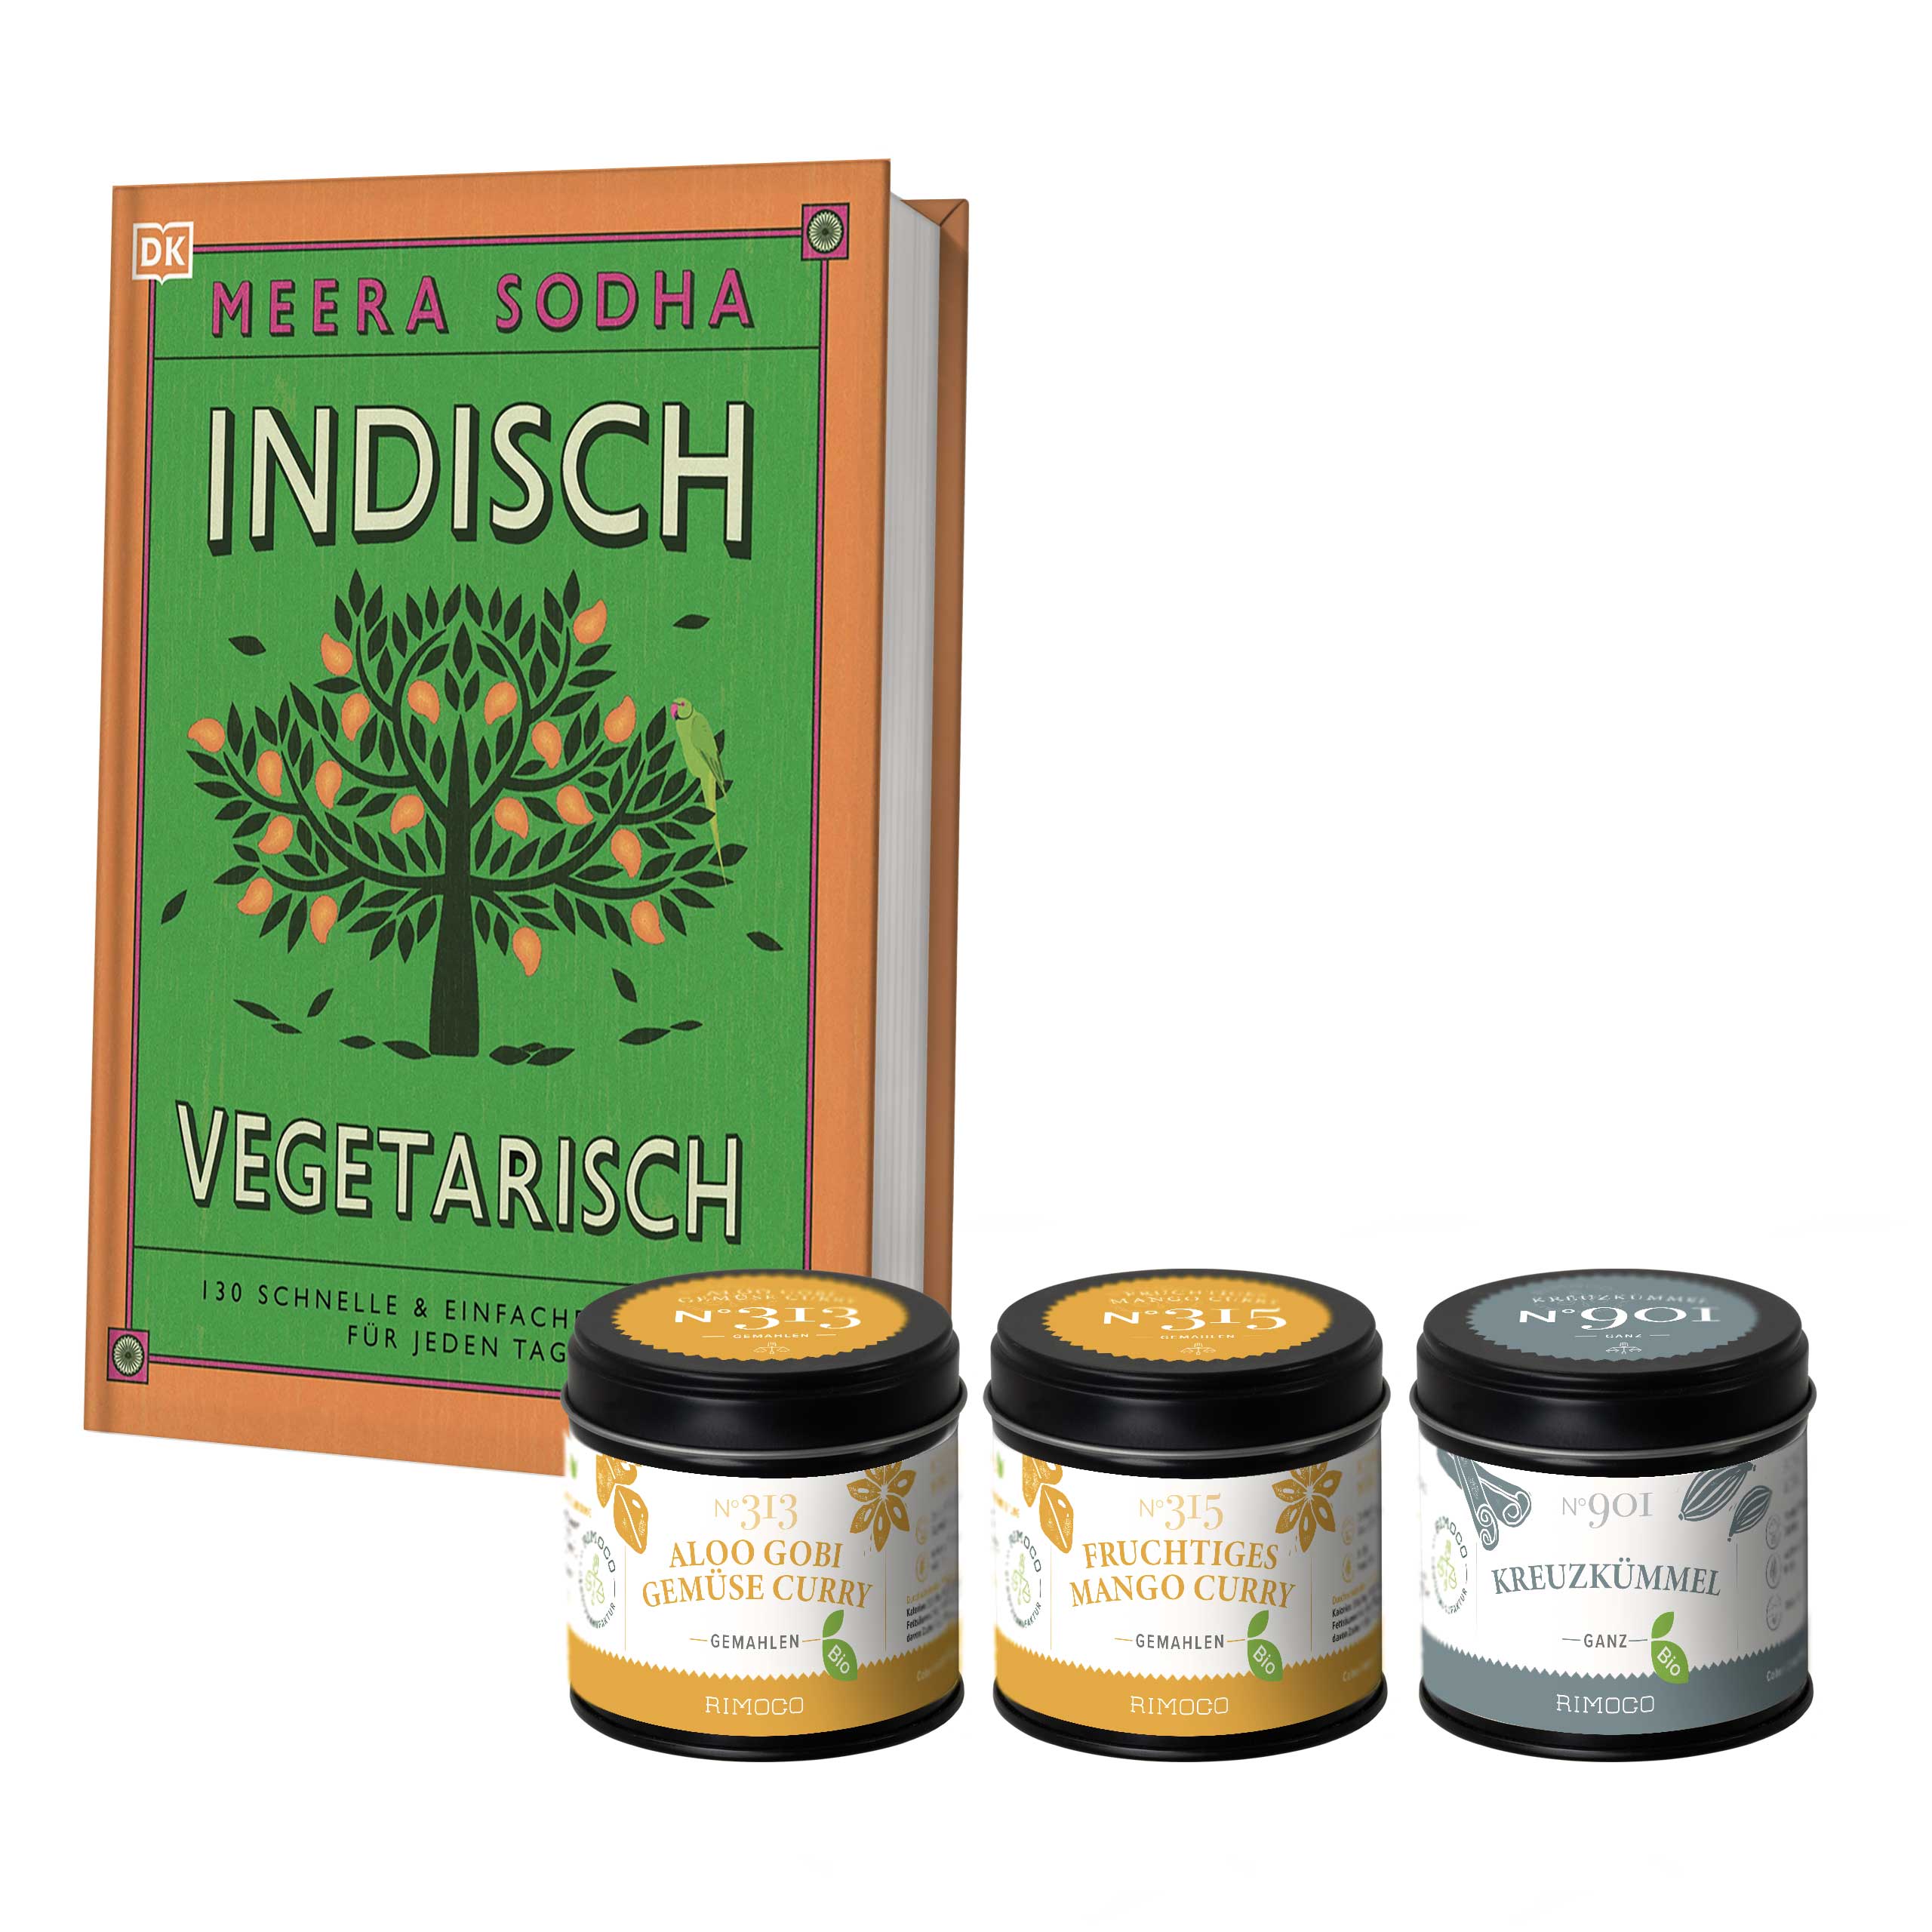 rimoco-geschenkset-kochbuch-mit-gewuerzset-indisch-vegetarischjcFogPPQhKY5o